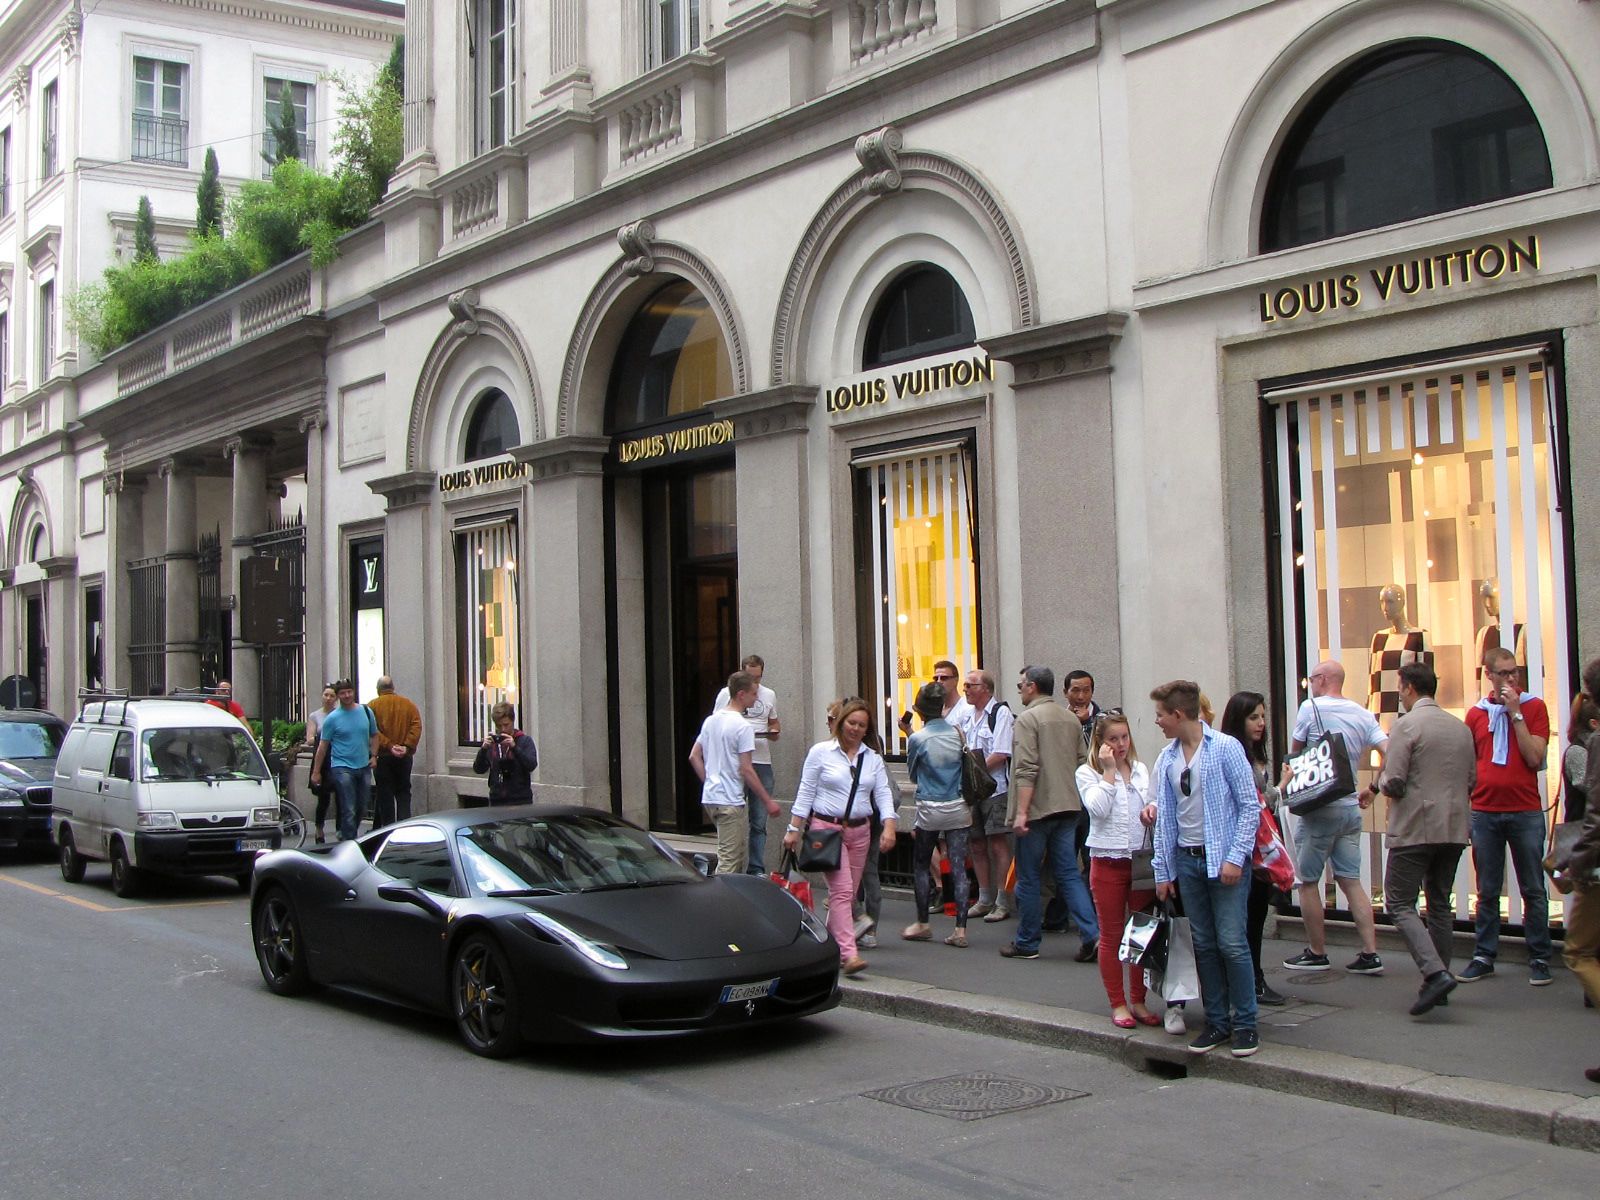 Louis Vuitton Boutique In Via Monte Napoleone Milan Stock Photo